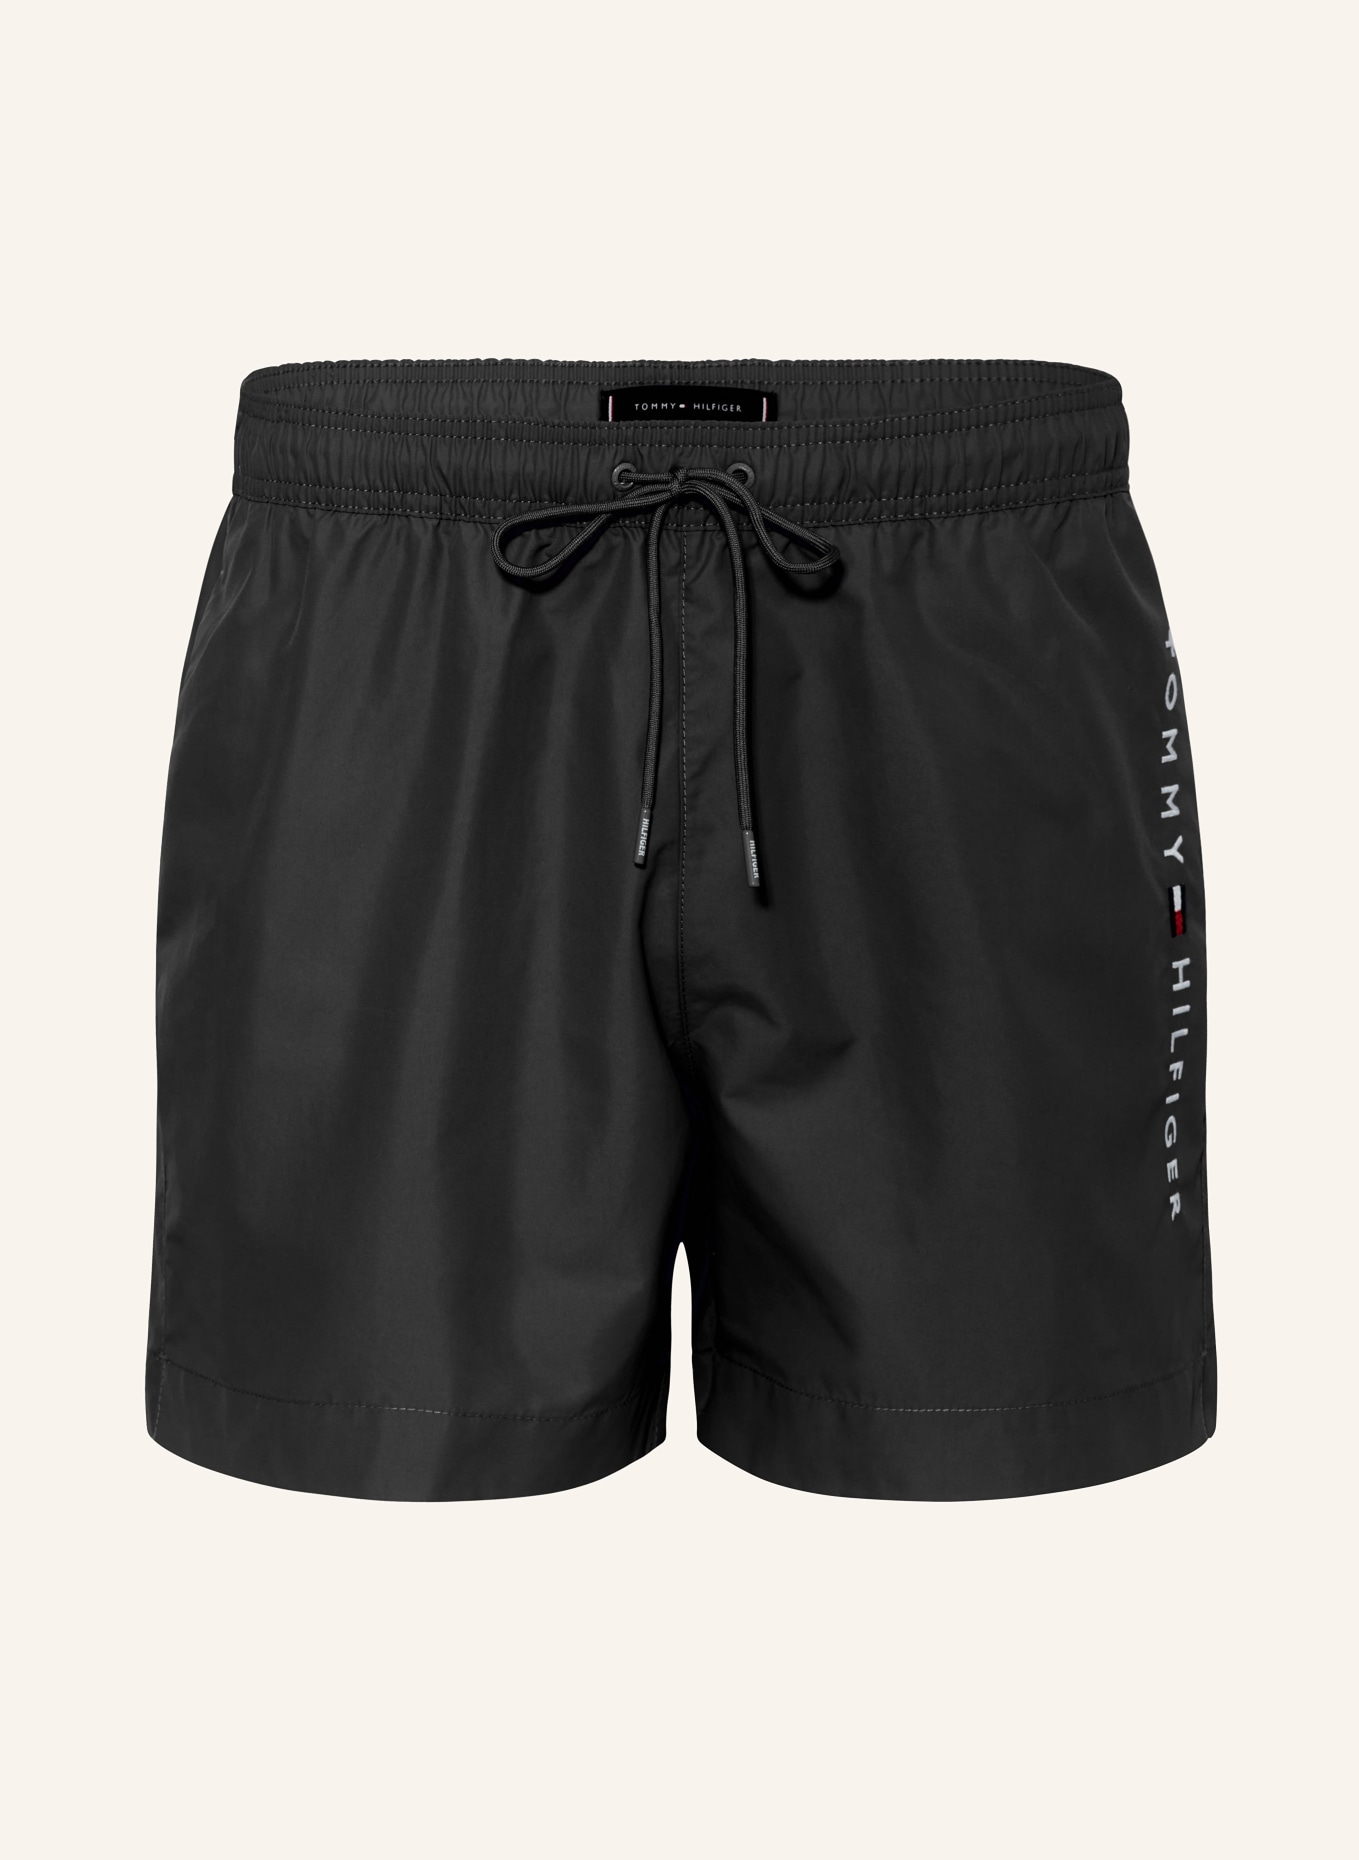 TOMMY HILFIGER Swim shorts, Color: BLACK (Image 1)